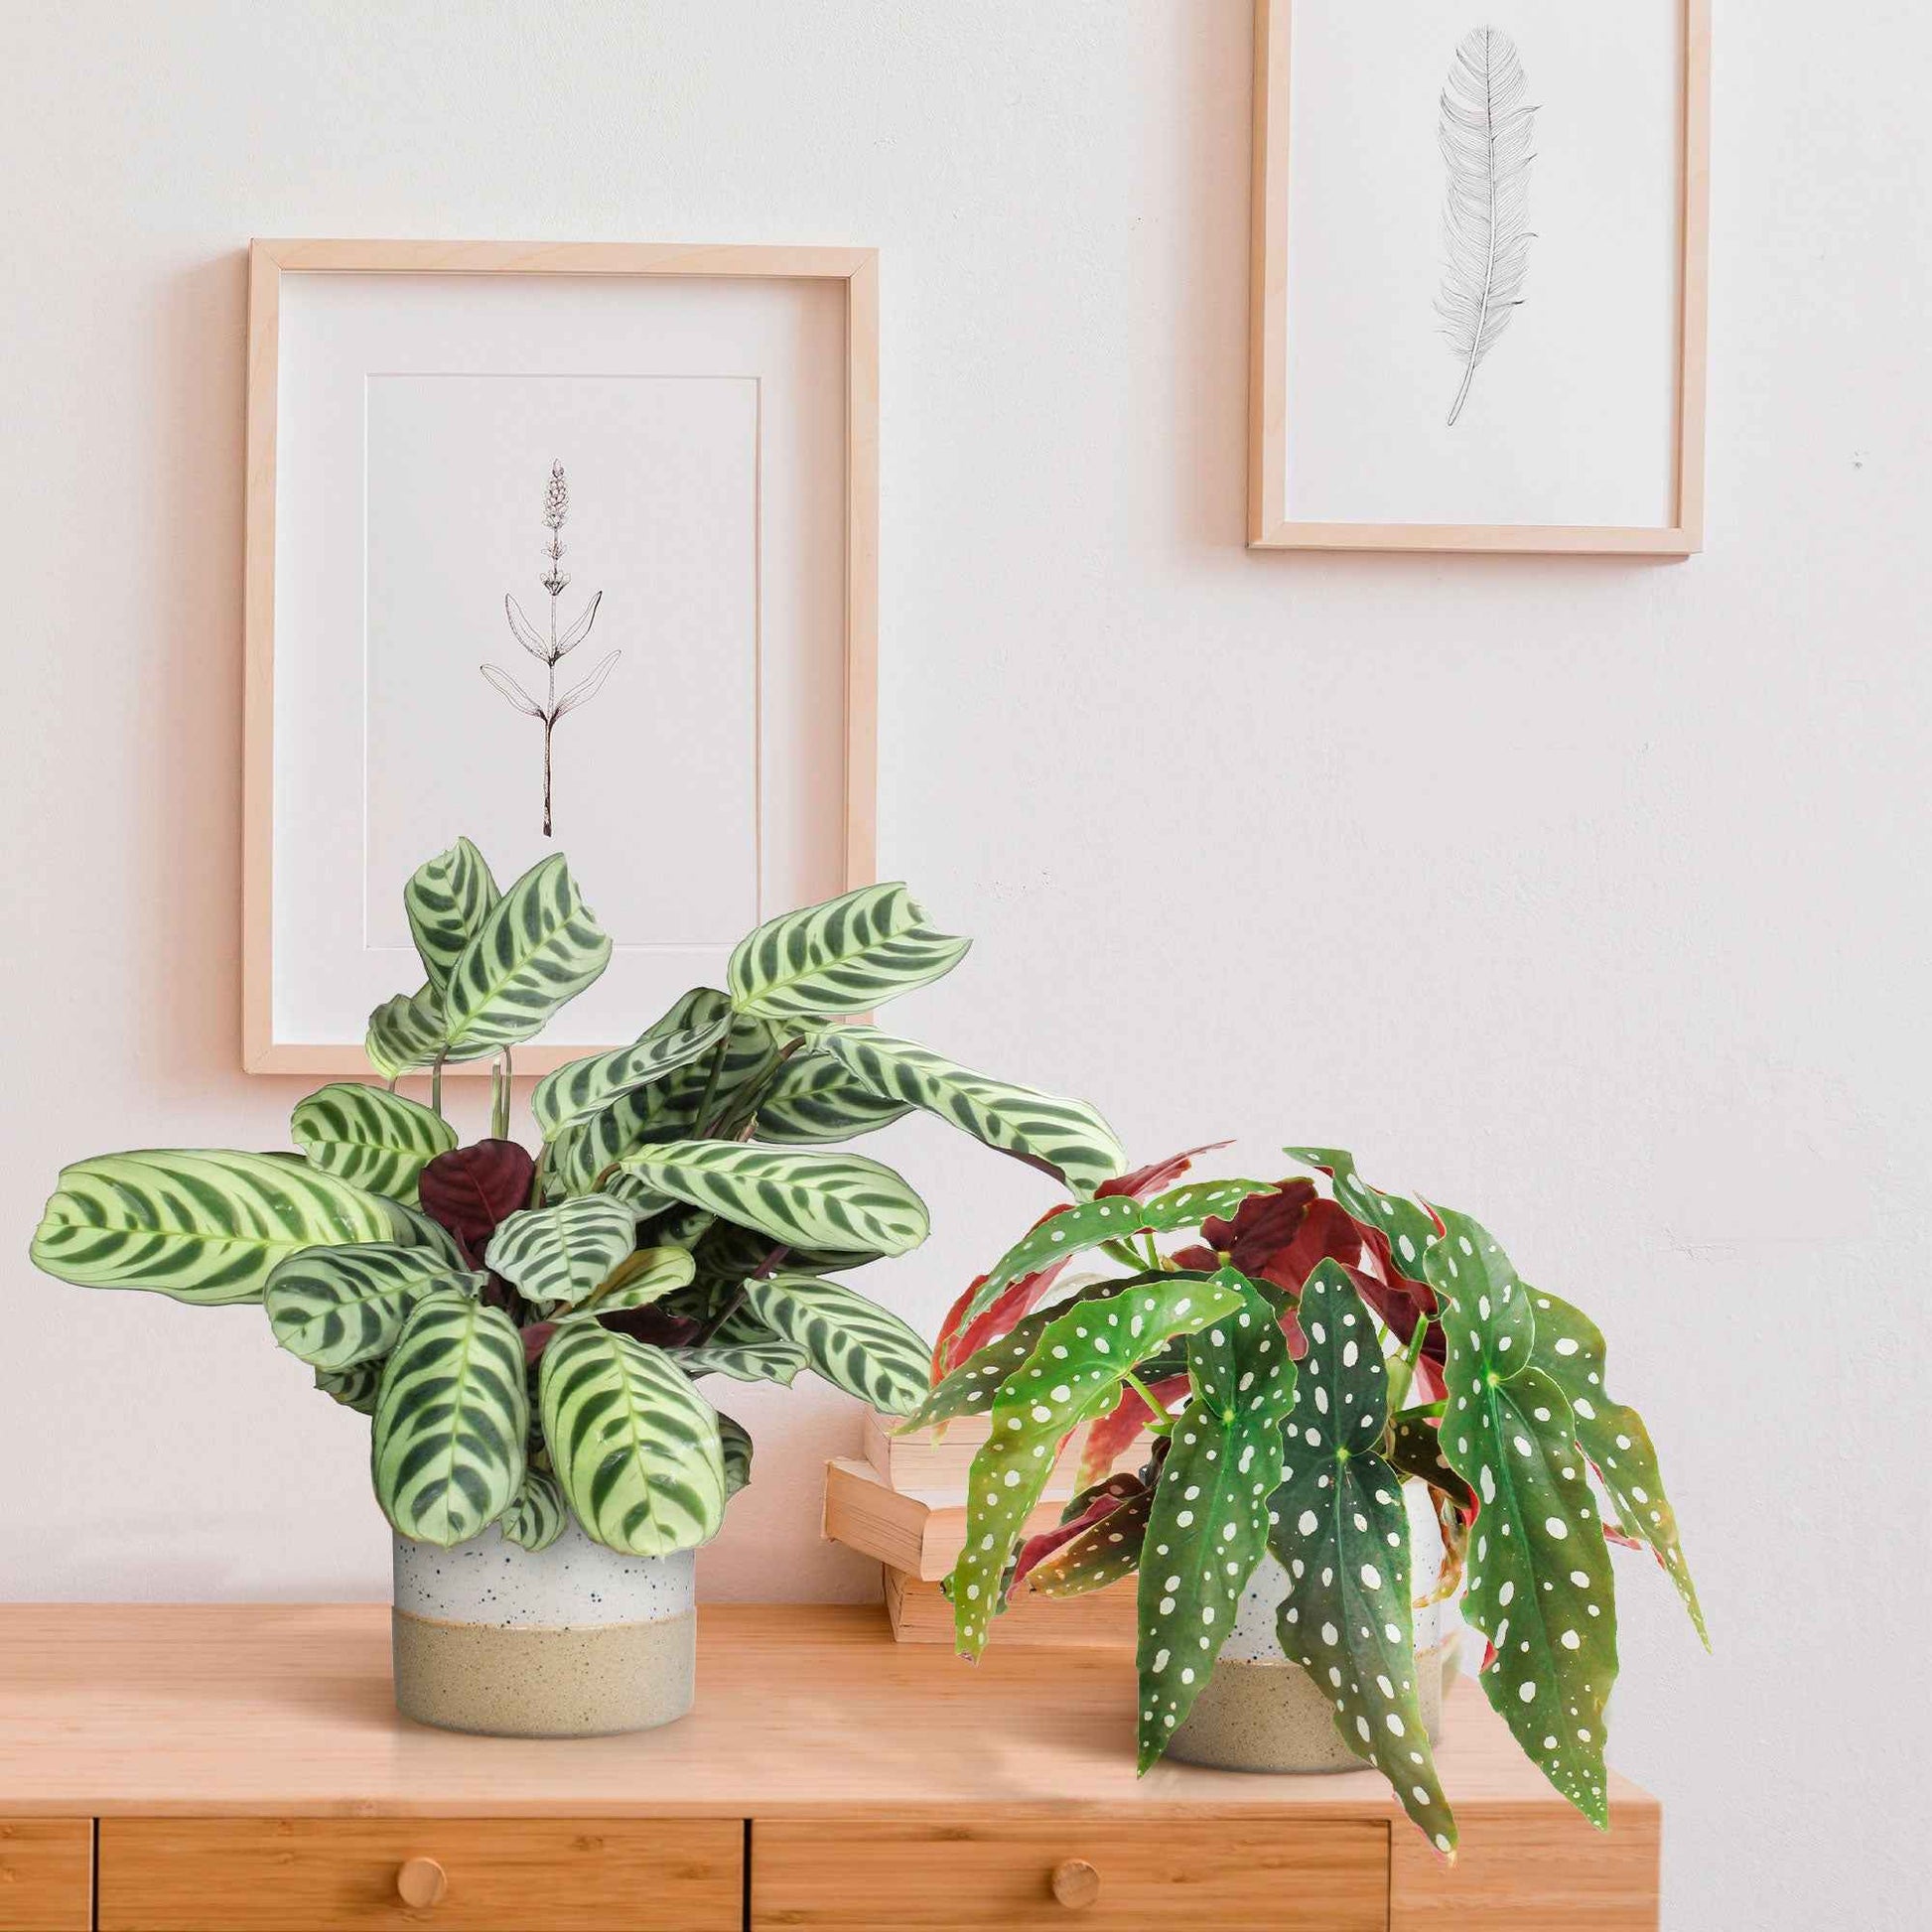 1x Begonia maculata + 1x Ctenanthe burle marxii - Beliebte grüne Zimmerpflanzen